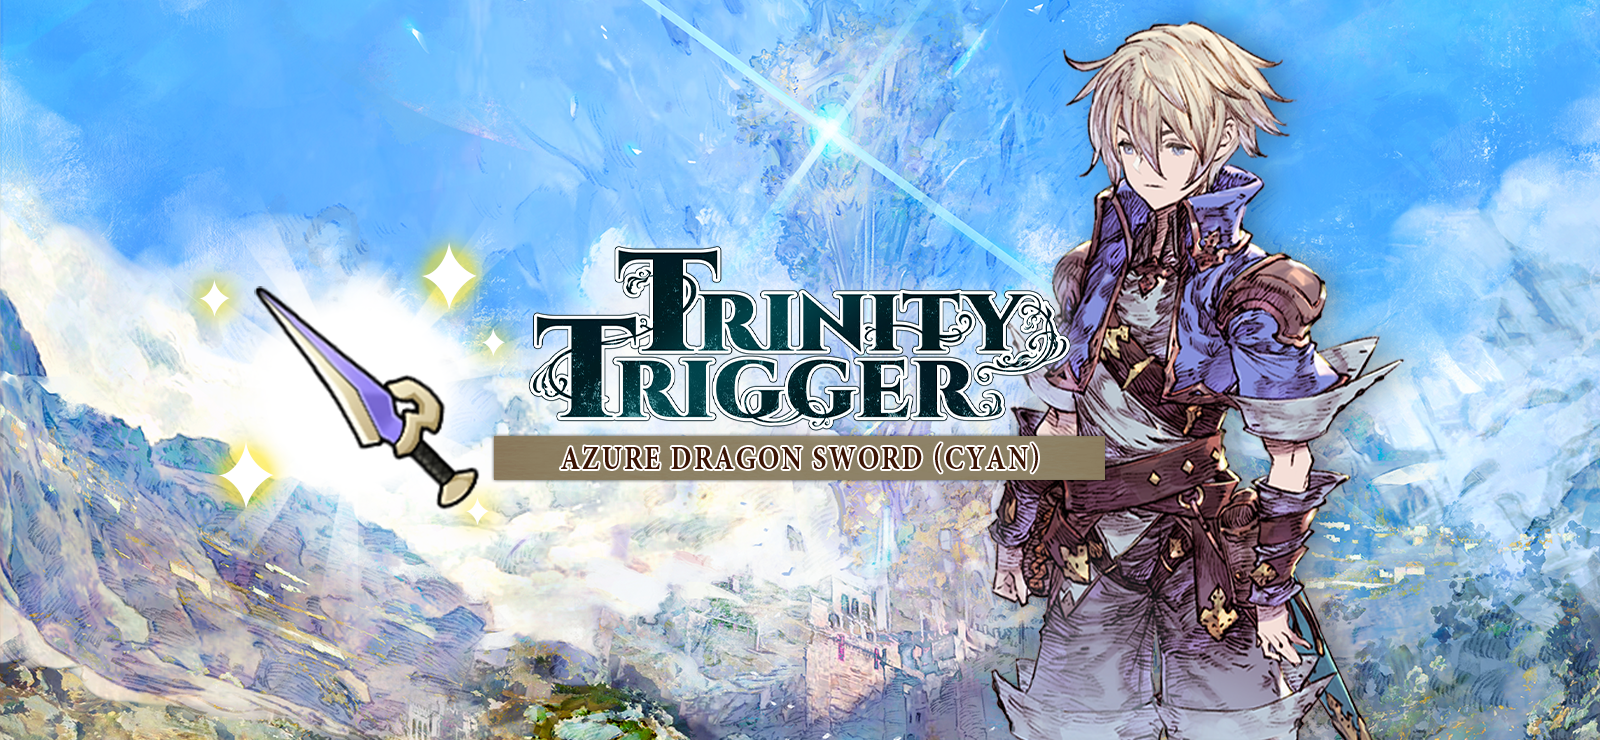 Trinity Trigger - Azure Dragon Sword (Cyan)